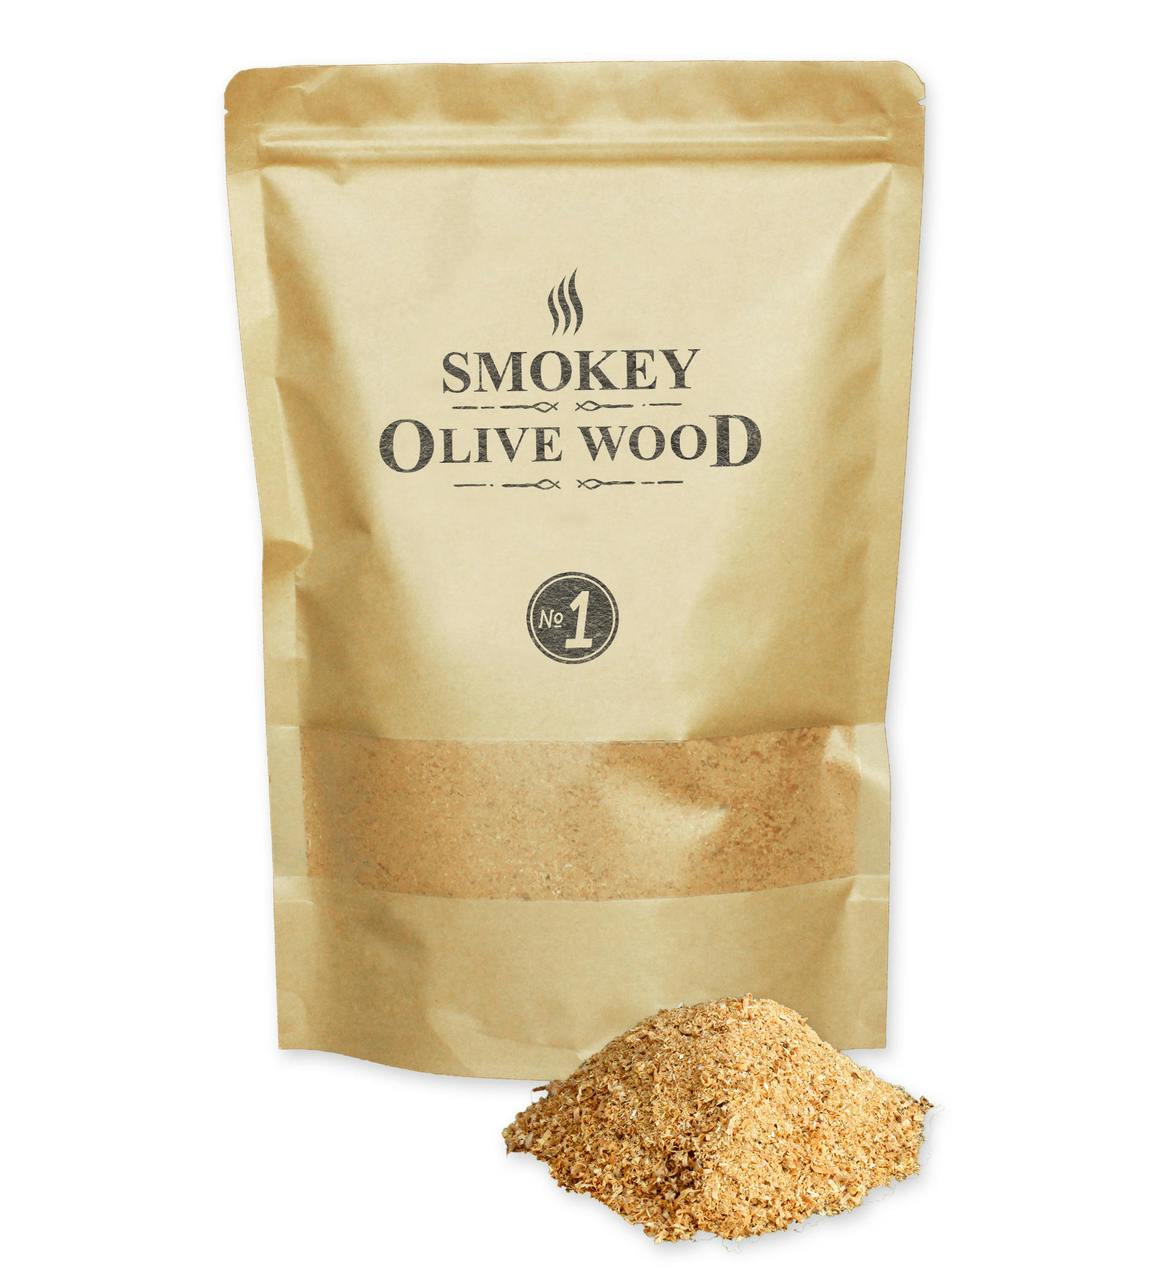 Copeaux de fumage de Chêne vert Smokey Olive Wood